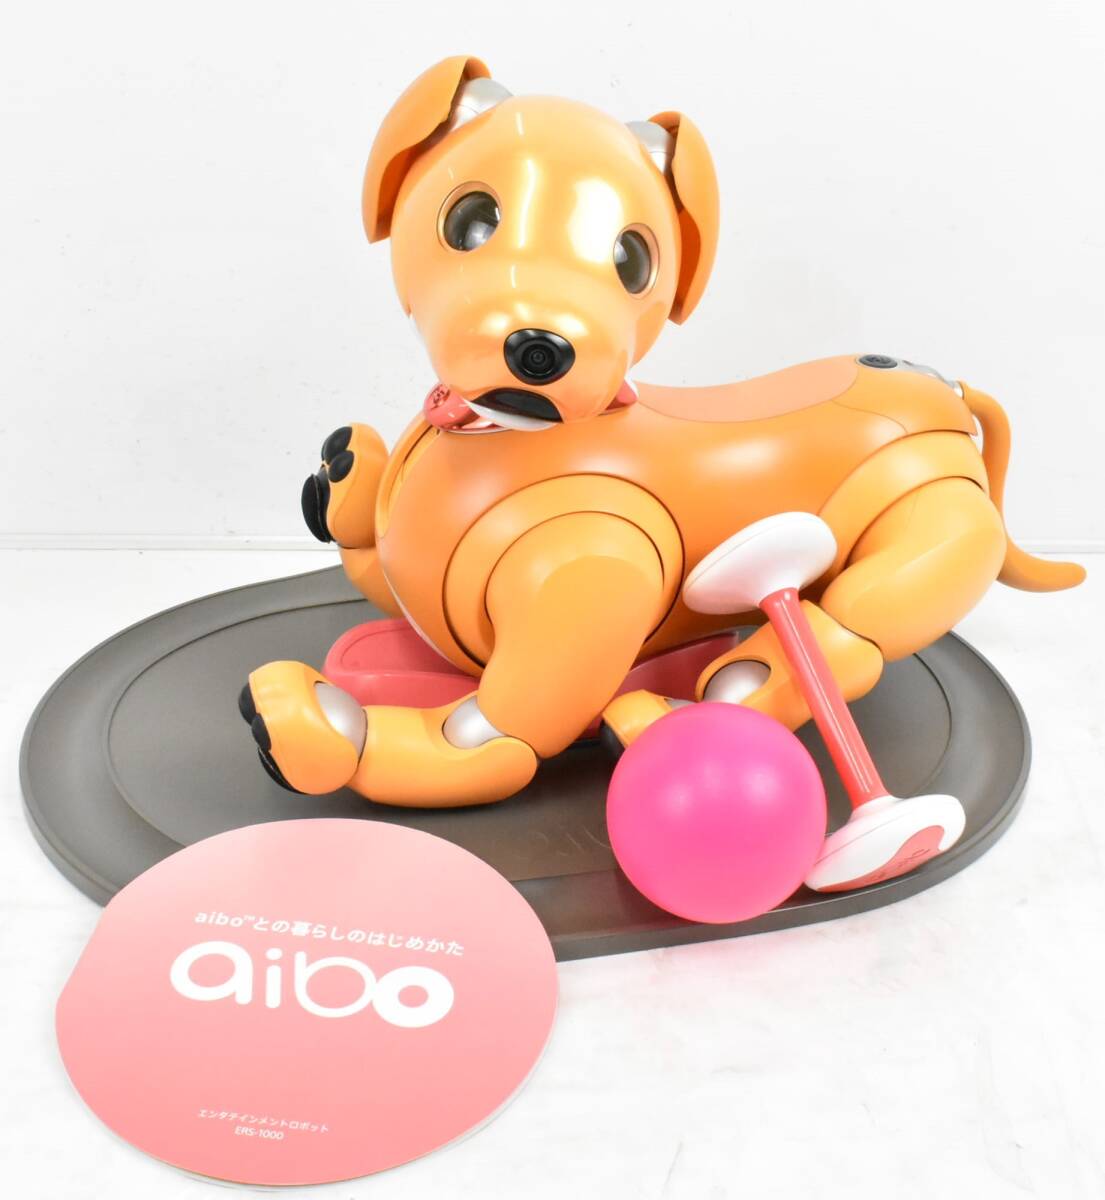 ソニー SONY アイボ ERS-1000 キャラメルエディション 限定モデル アイボーン AIBO 犬型 ロボット ペット ITM3ROH4X2IO-YR-J110-byebyeの画像1